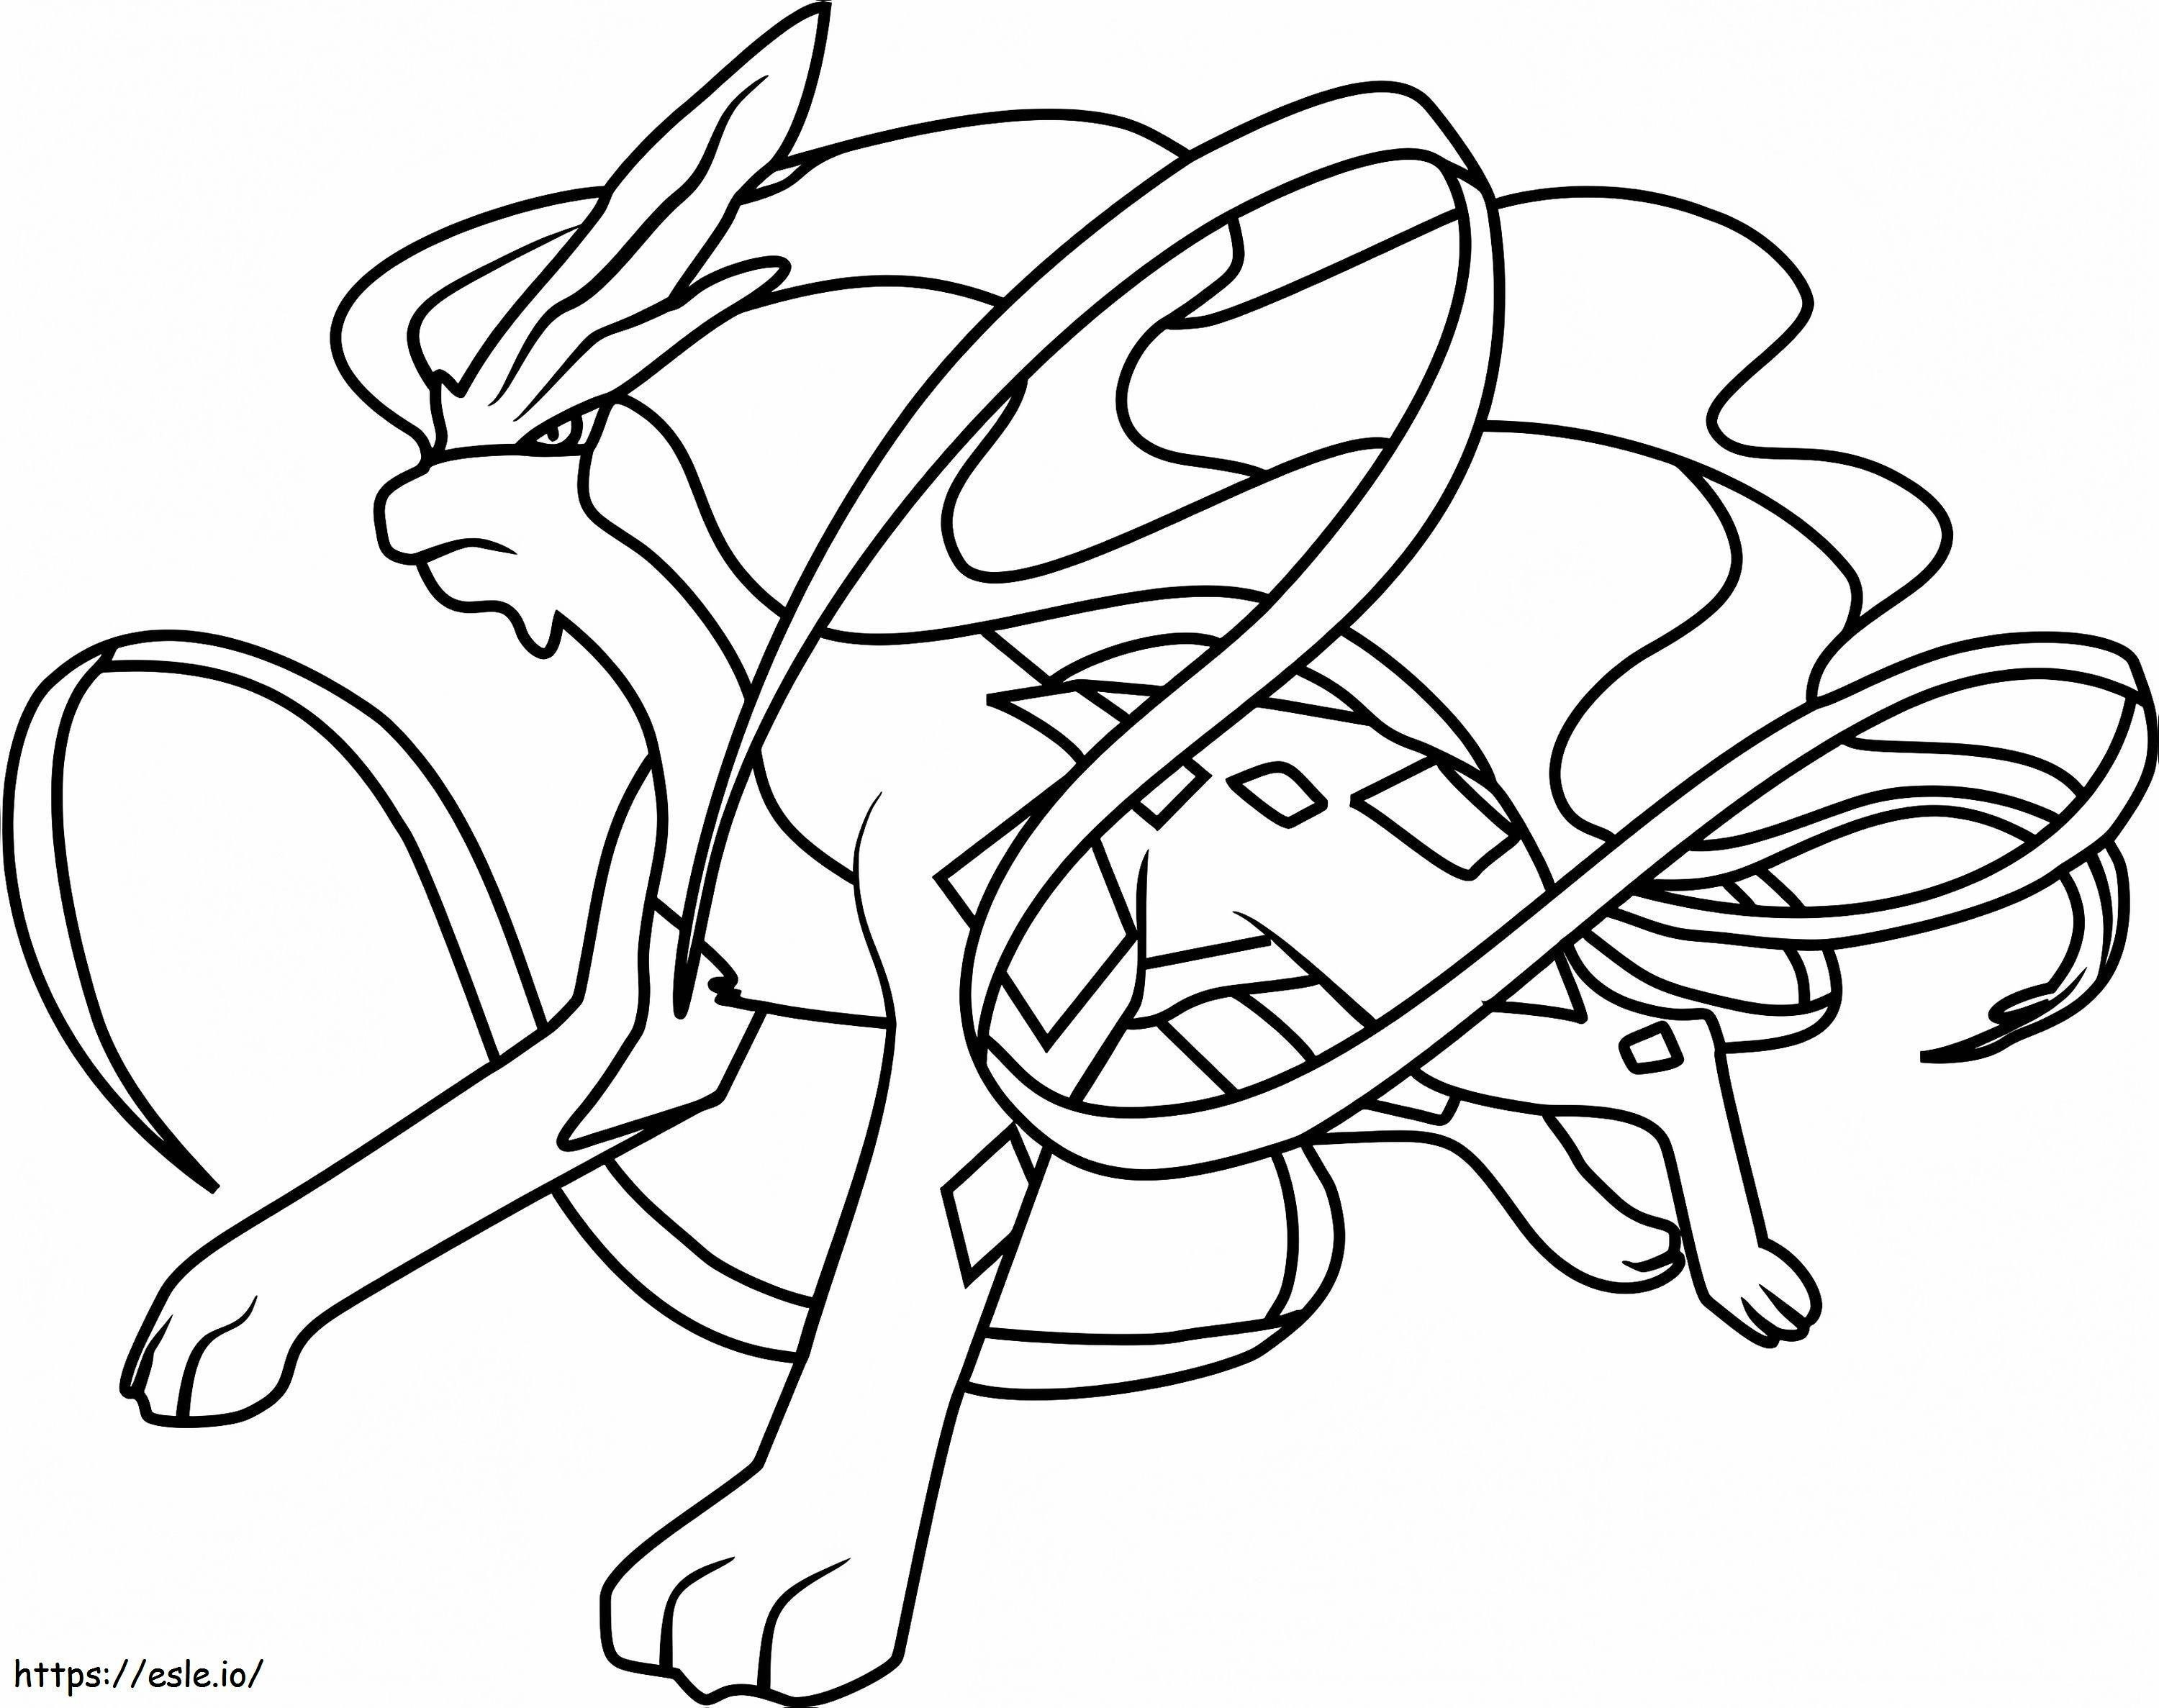 Coloriage Pokémon Suicune à imprimer dessin